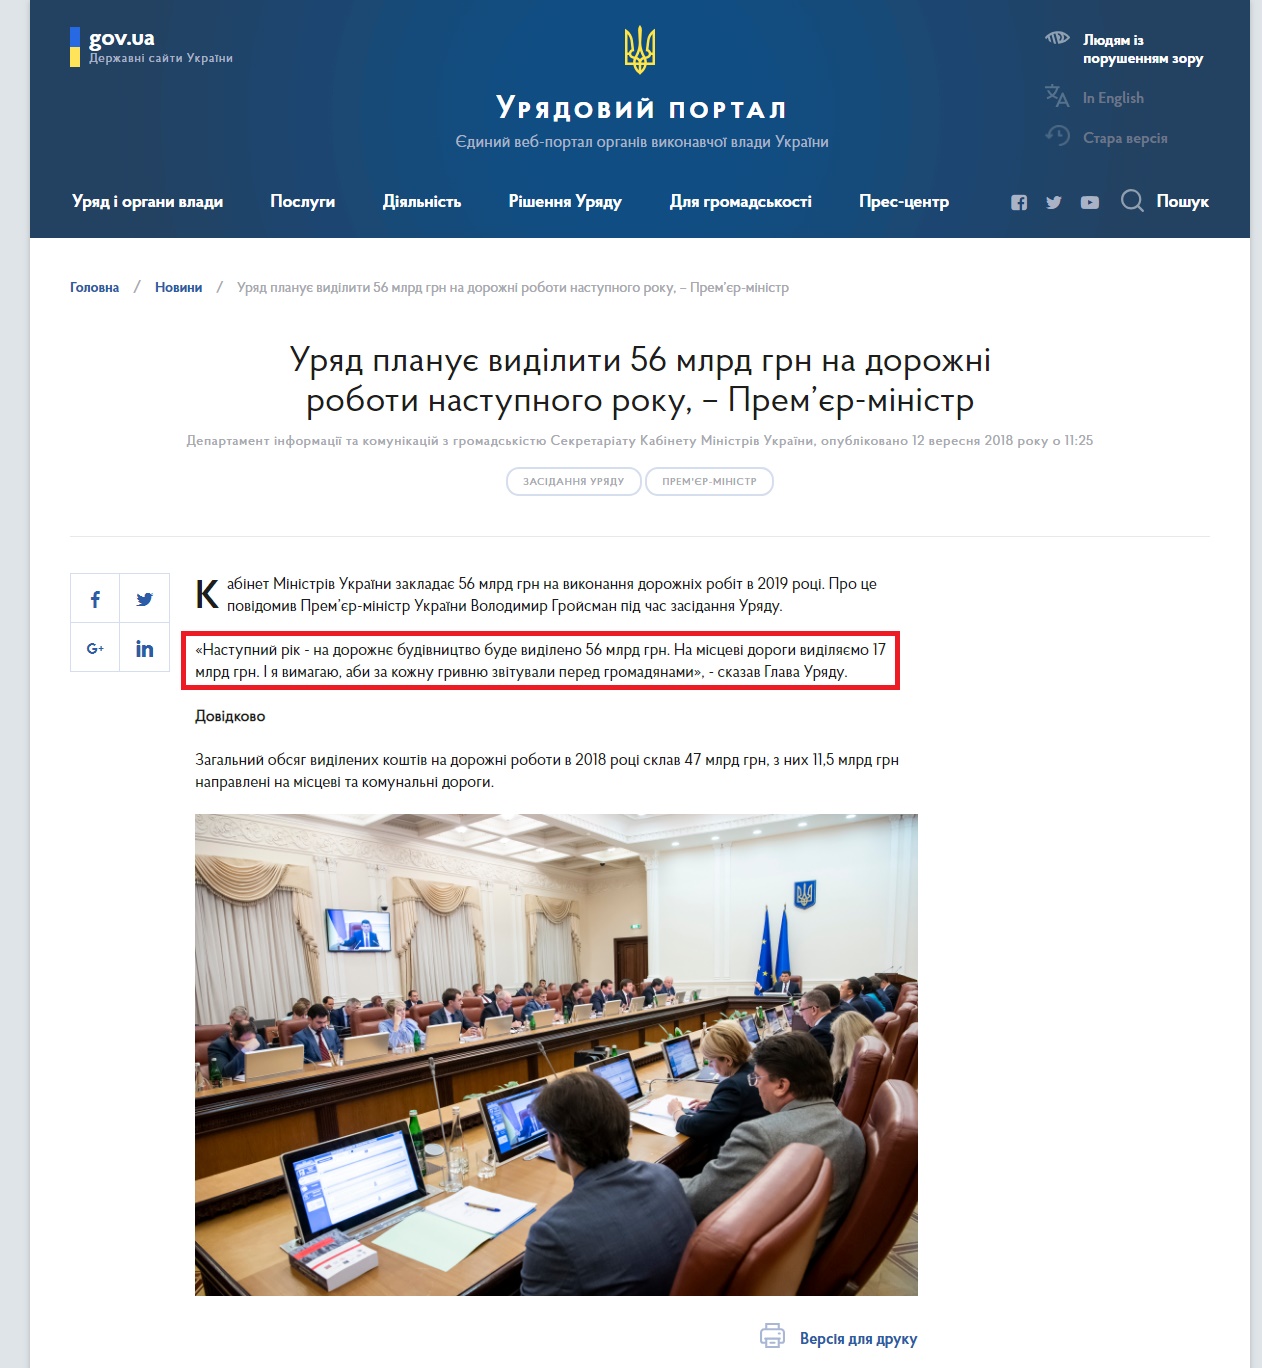 https://www.kmu.gov.ua/ua/news/uryad-planuye-vidiliti-56-mlrd-grn-na-dorozhni-roboti-nastupnogo-roku-premyer-ministr